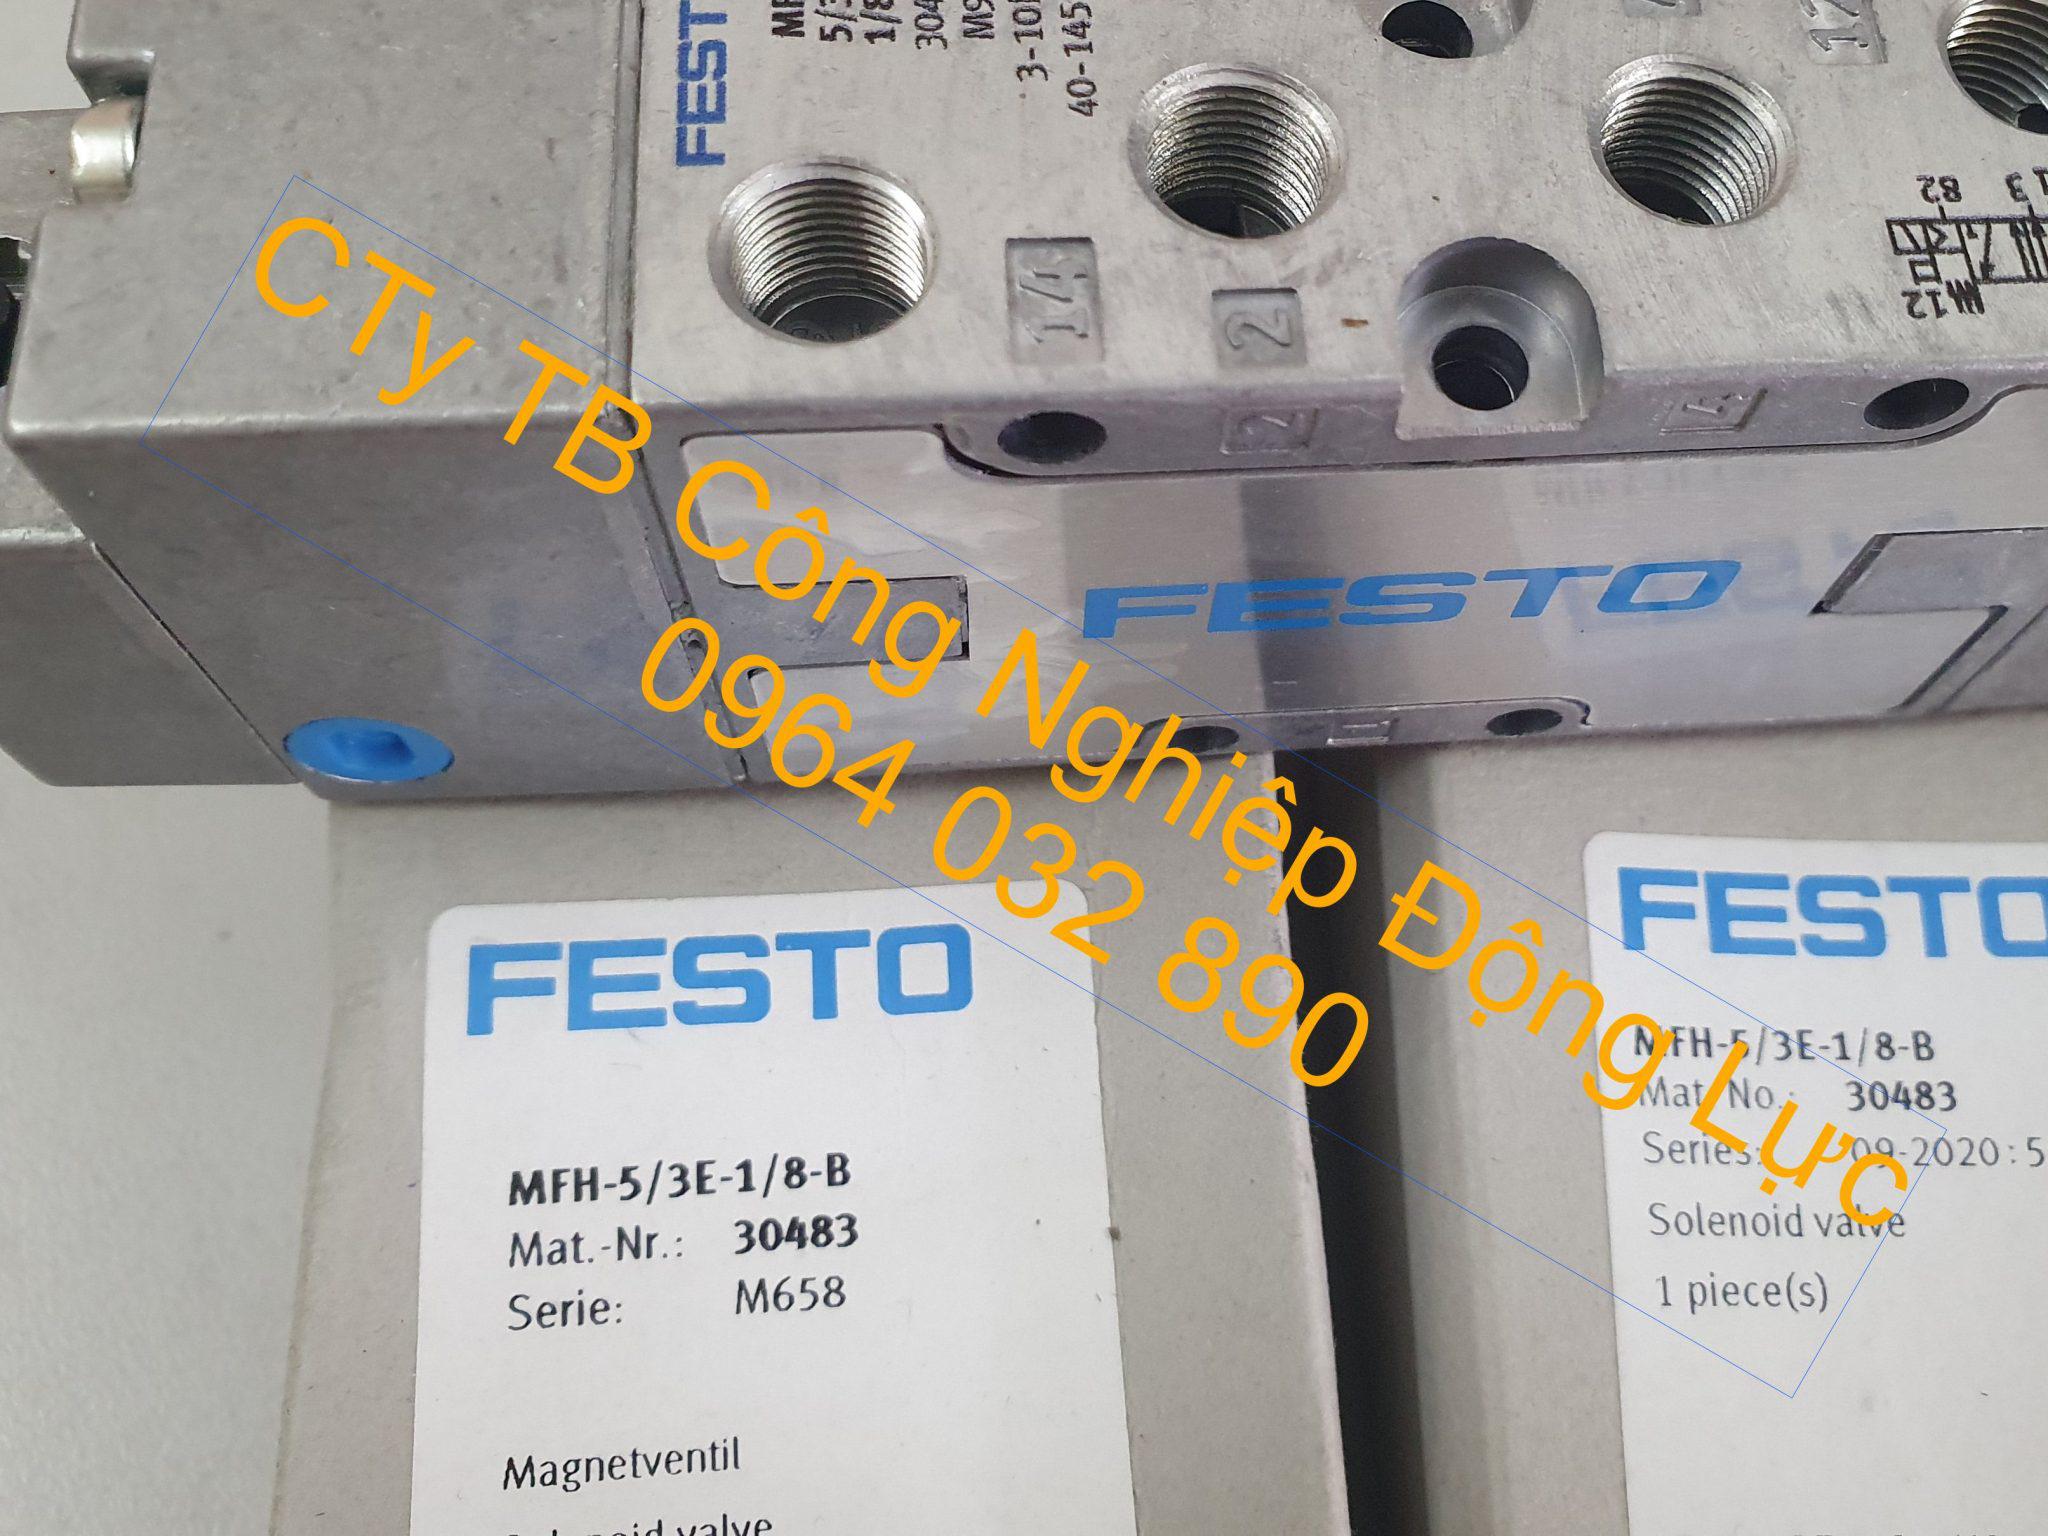 van điện từ MFH-53E-18-B một sản phẩm của festo được nhập khẩu chính hãng và phân phối bảo hành trên toàn quốc với giá rẻ nhất thị trường hiện nay